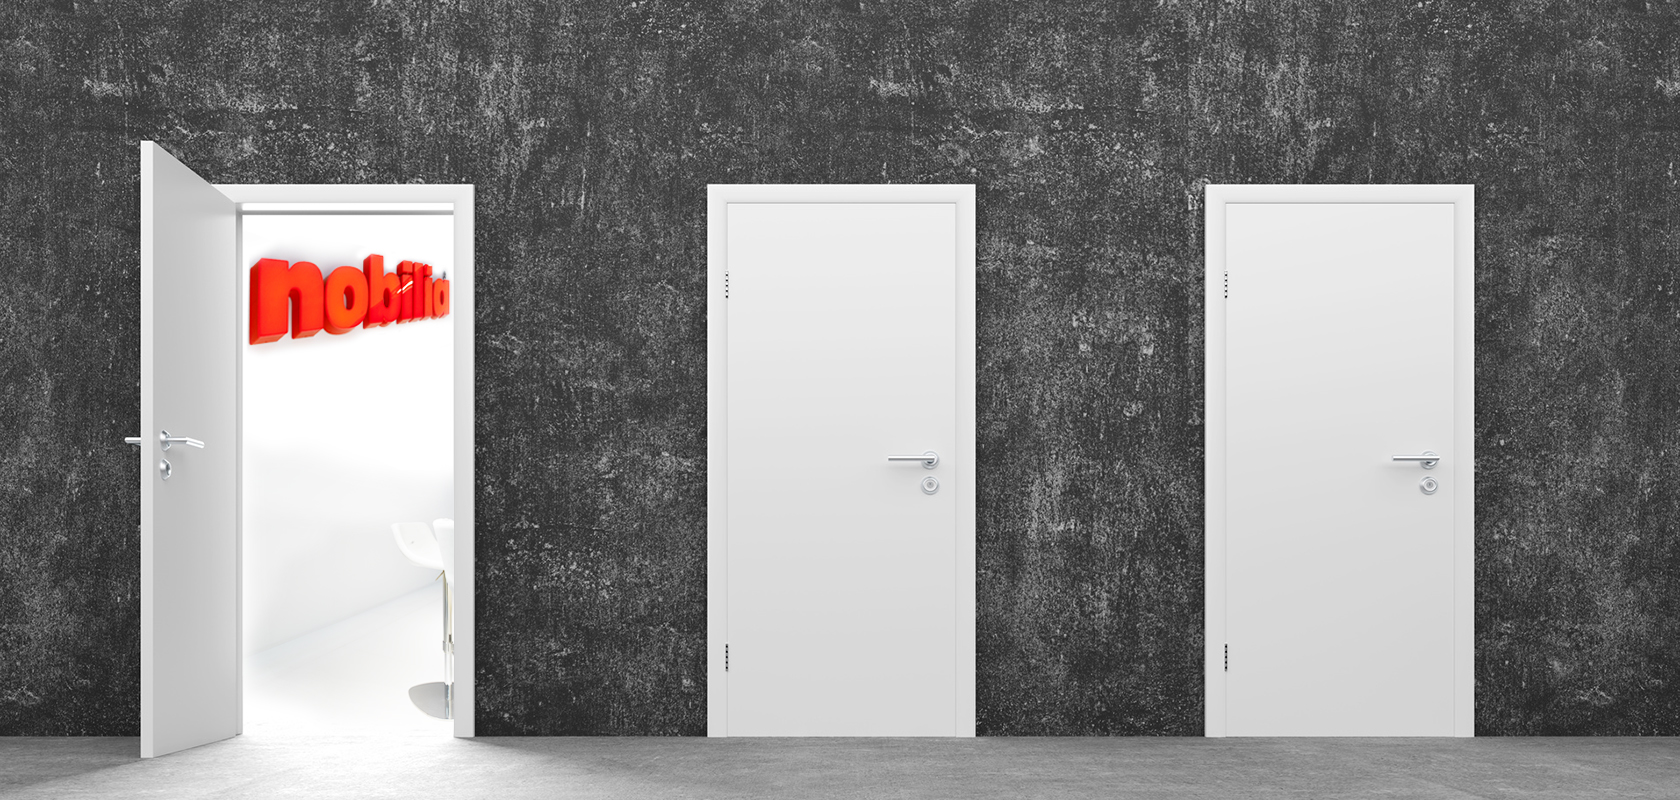 Drei Türen an einer strukturierten grauen Wand, wobei die linke Tür angelehnt ist und ein rotes "Motiv"-Schild zeigt, das die Wahl und potenzielle Wege symbolisiert.